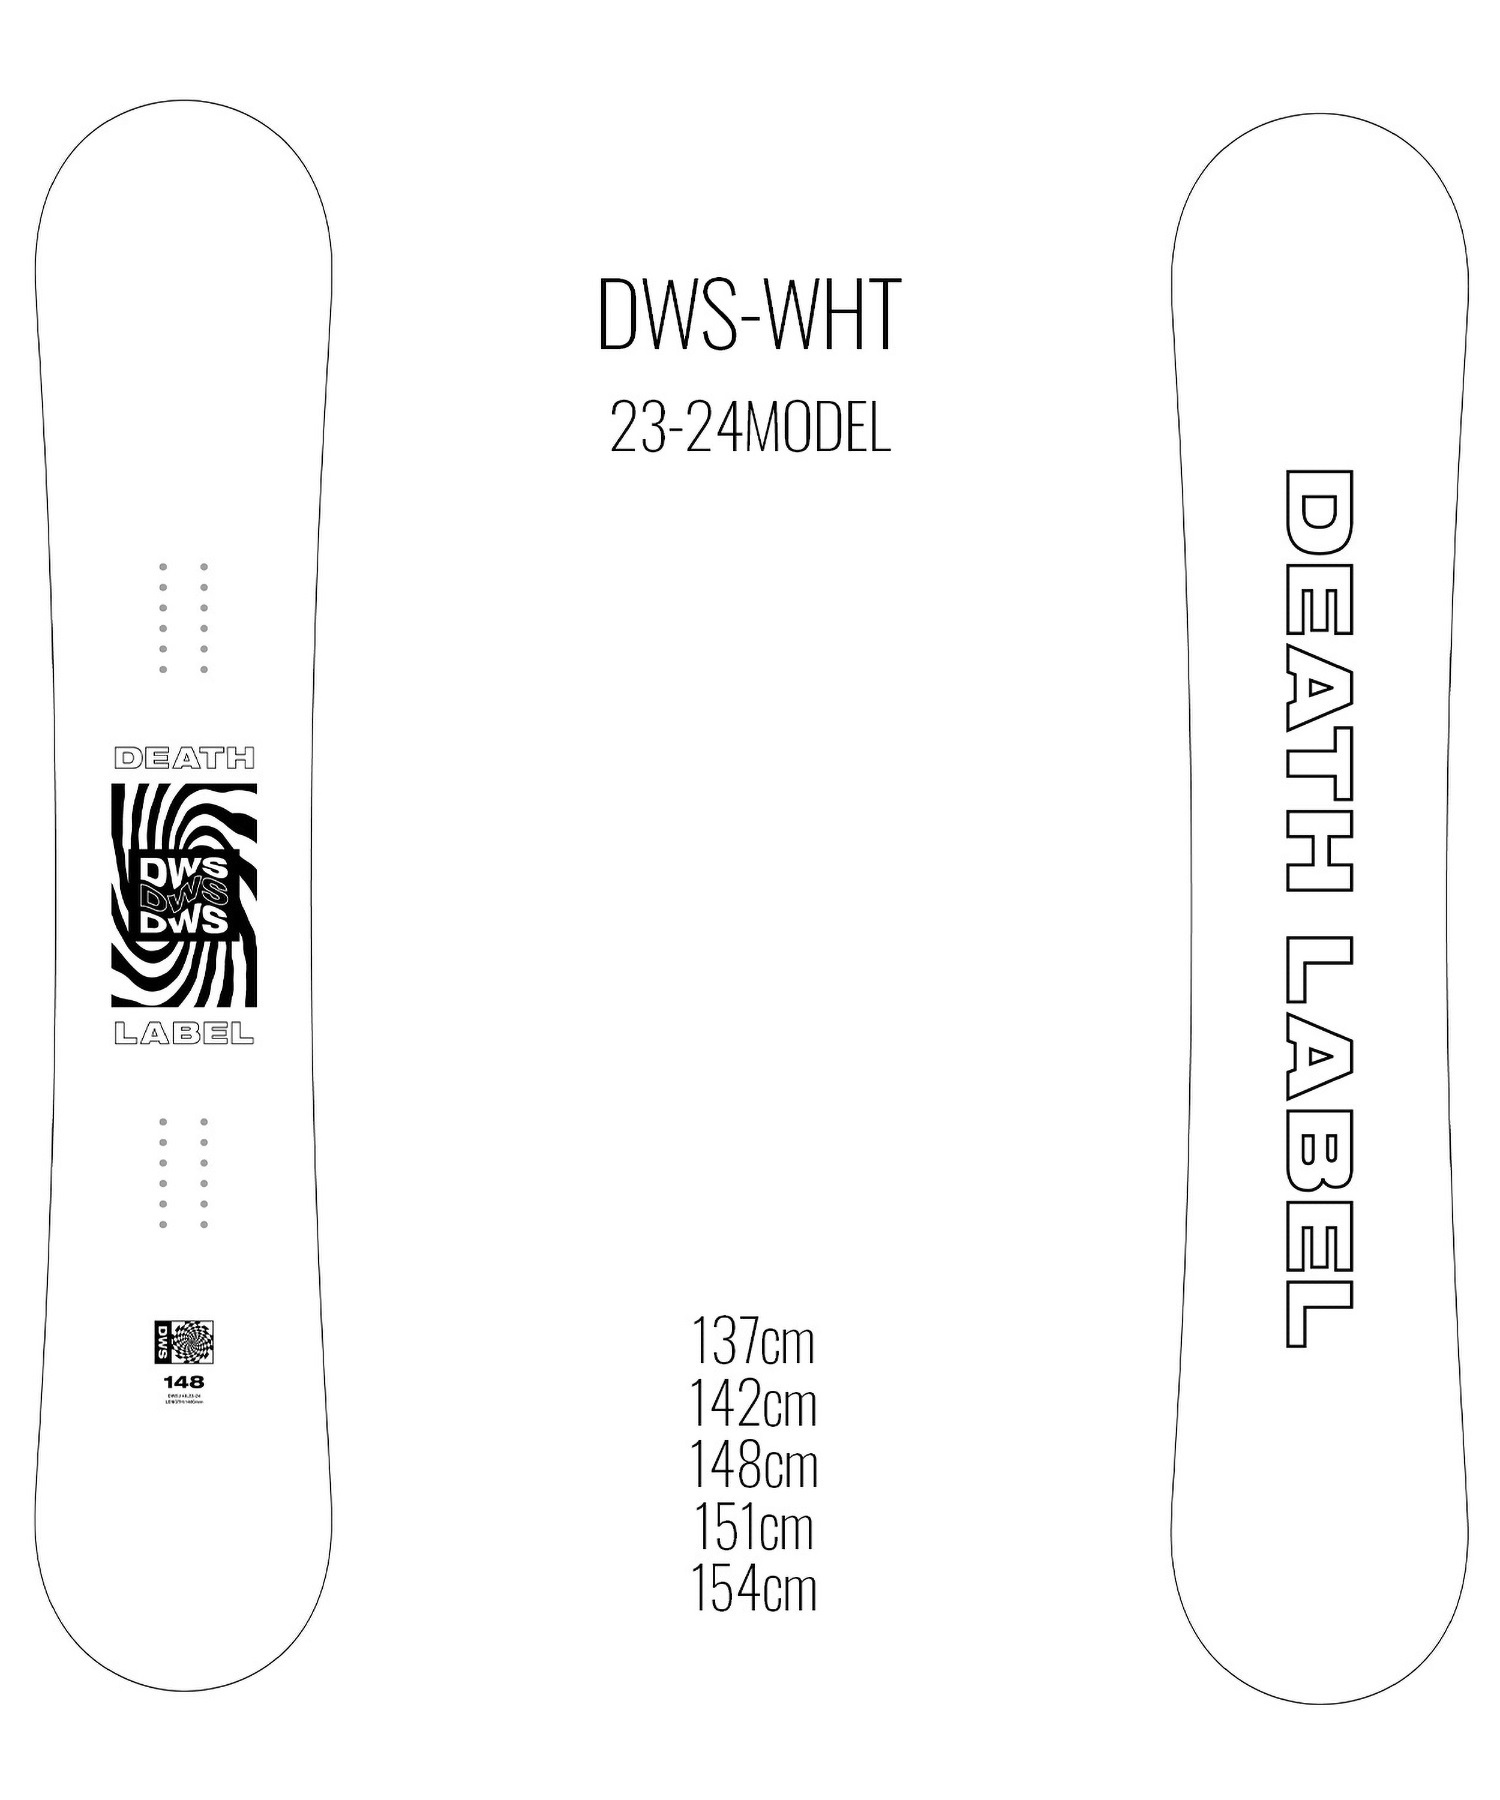 【早期購入/店頭受取対象外】スノーボード 板 ユニセックス DEATH LABEL デスレーベル DWS-WHT 23-24モデル ムラサキスポーツ KK C2(WHT-137cm)